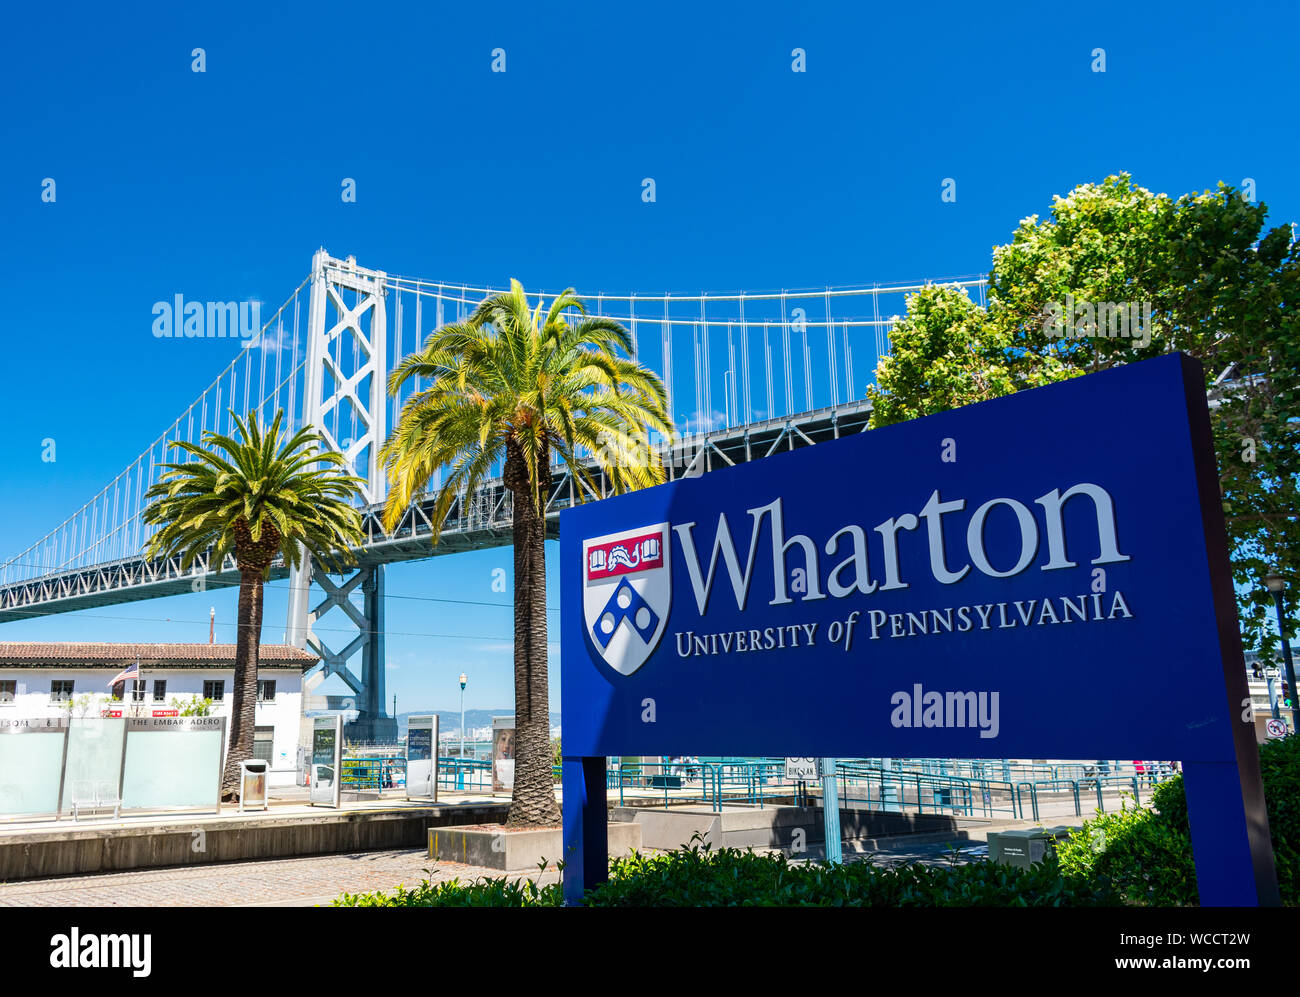 L'Université de Pennsylvanie Wharton School campus près de signer avec San Francisco, Oakland Bay Bridge en arrière-plan Banque D'Images